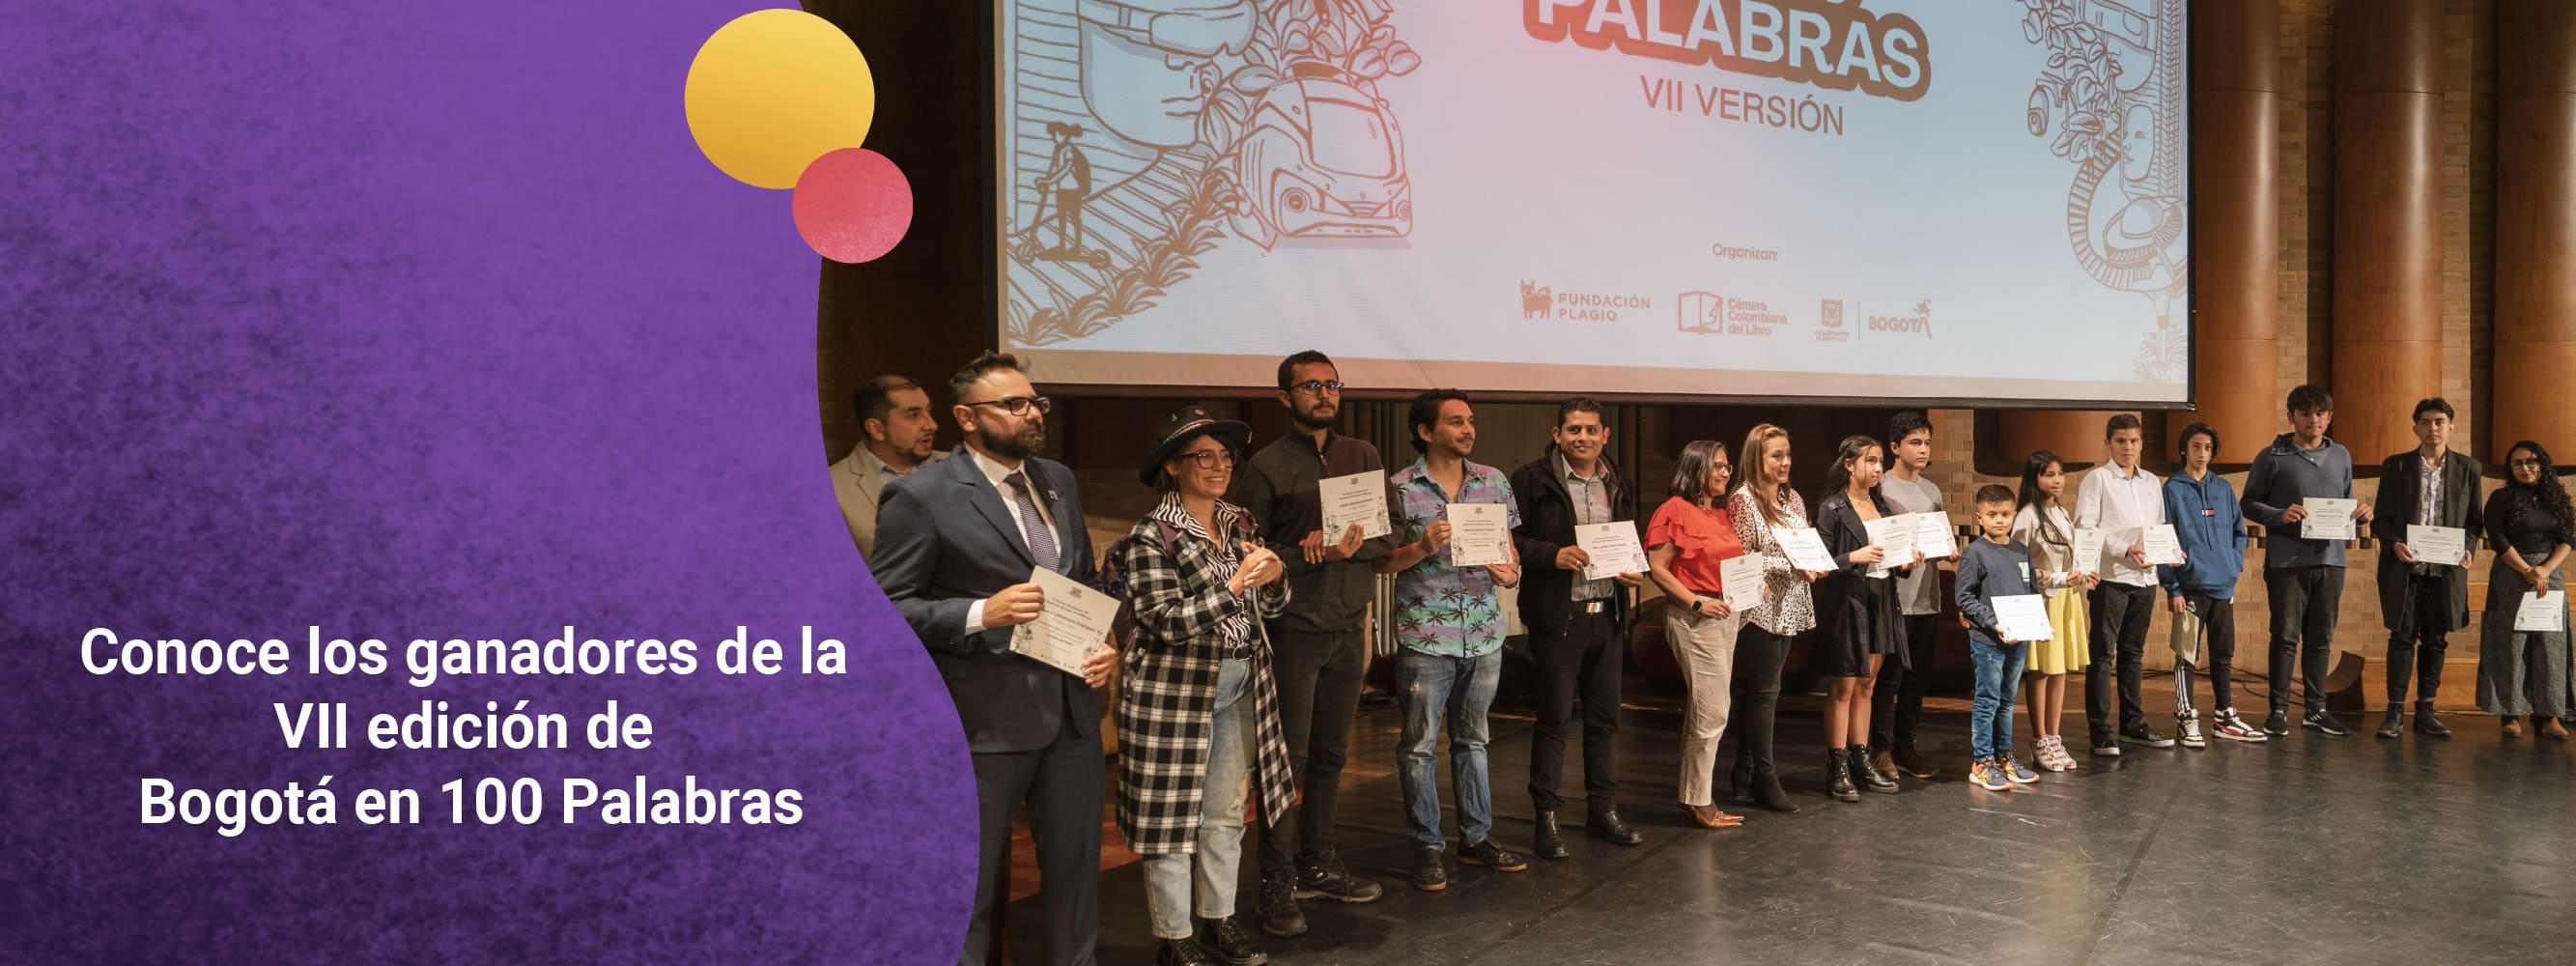 Bogotá en 100 Palabras premia a los ganadores de la séptima edición